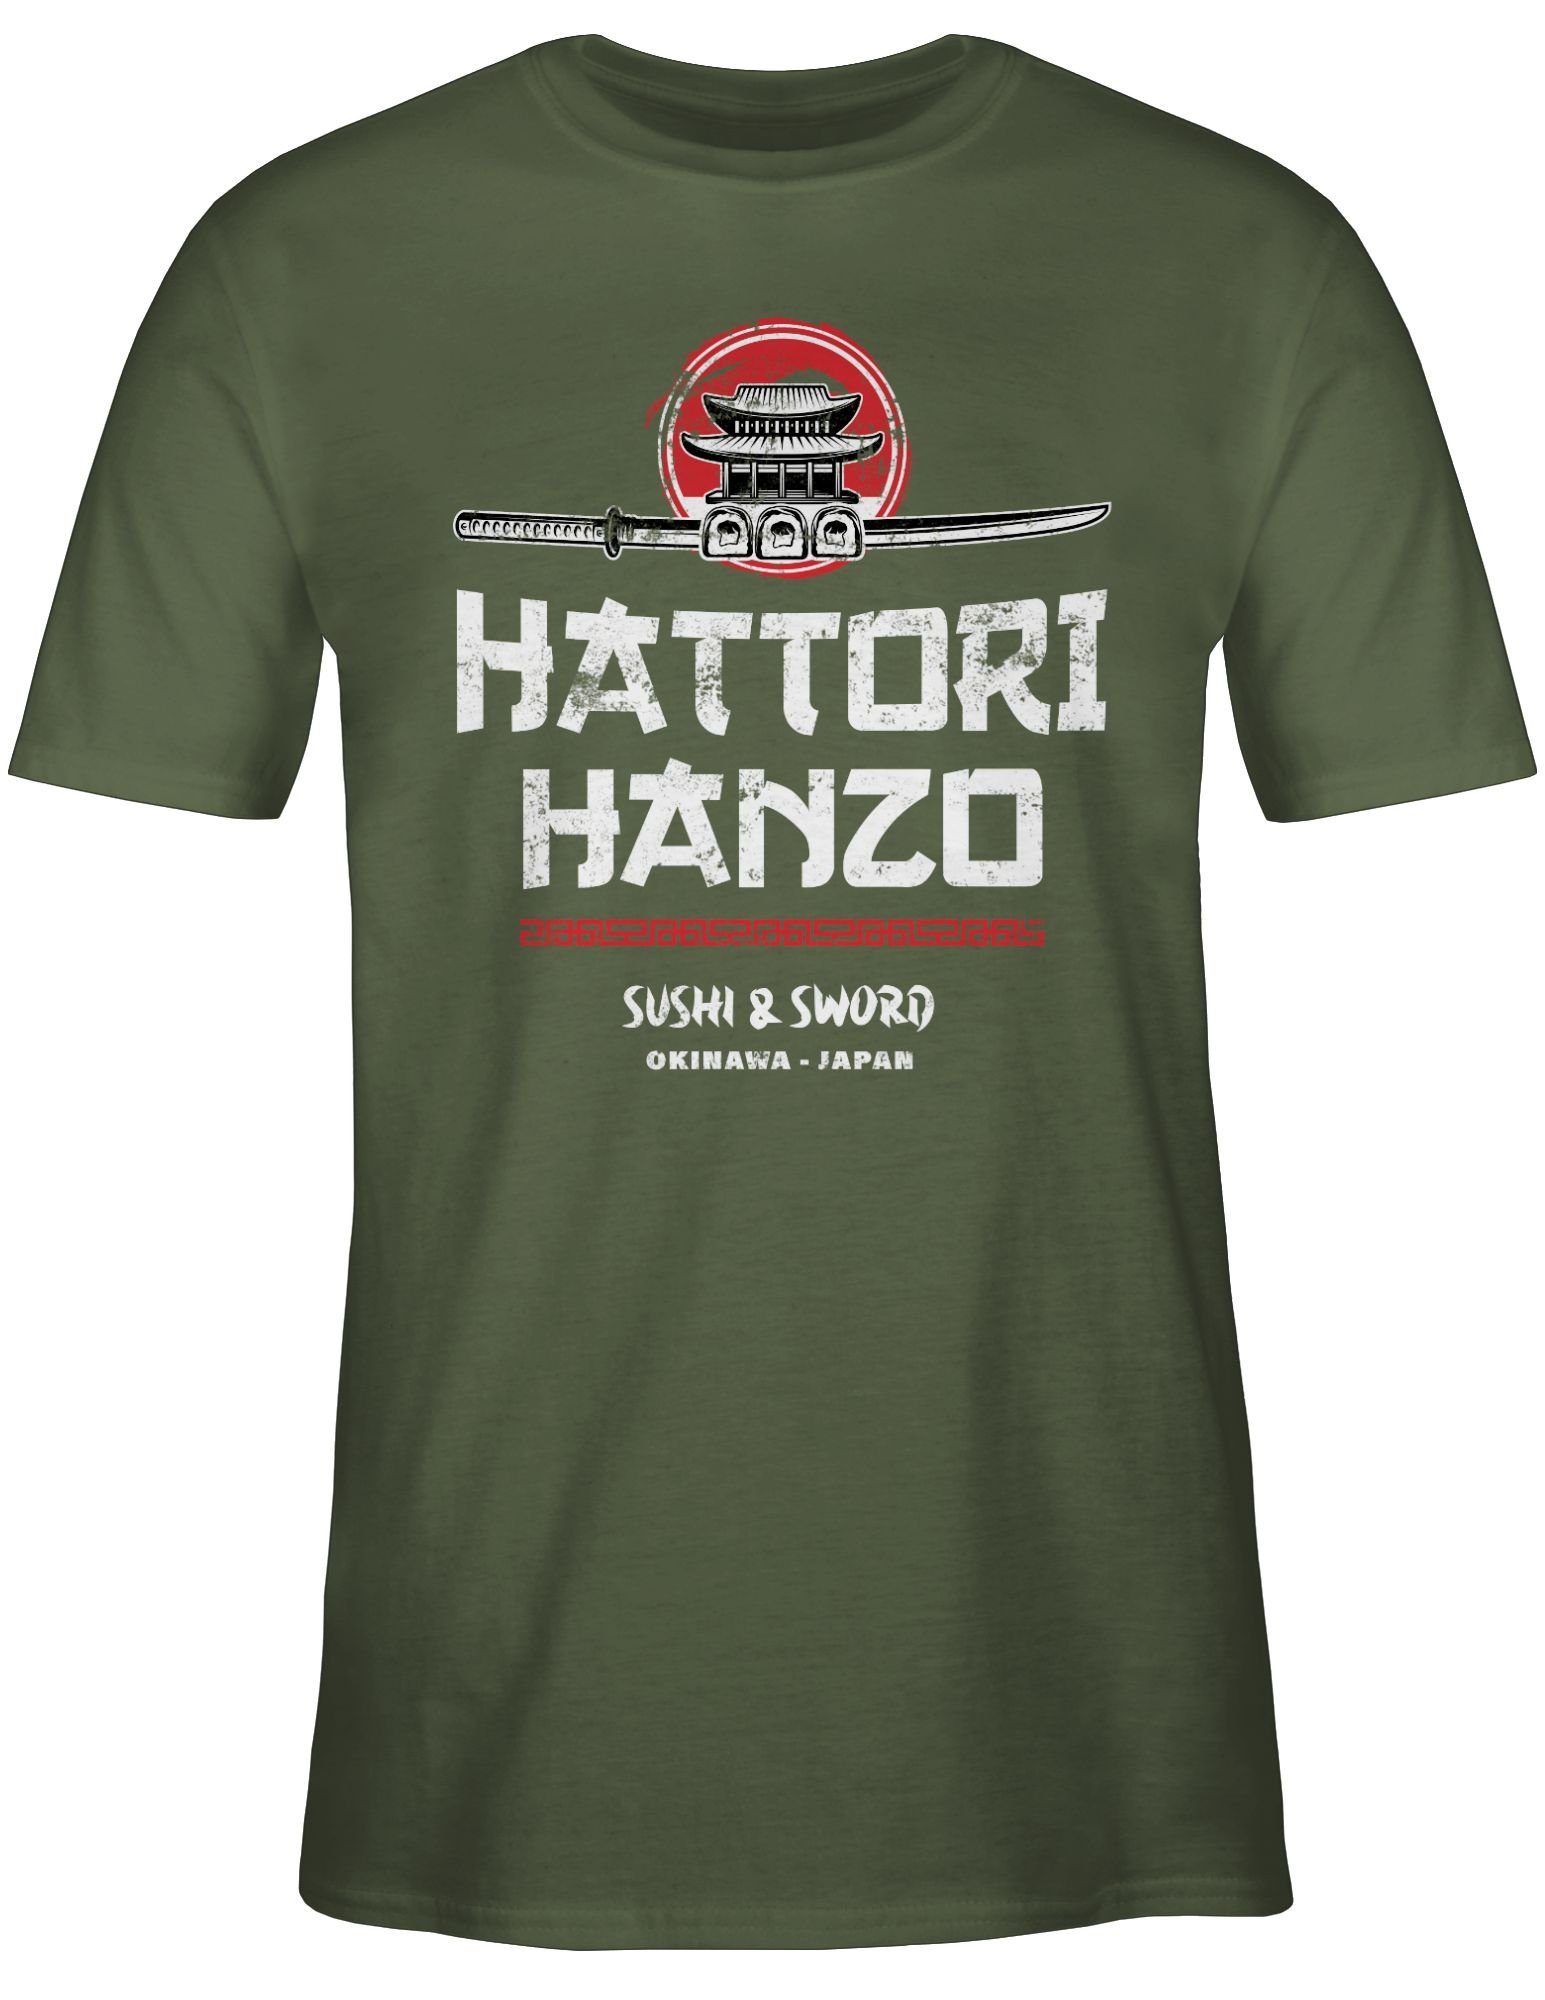 Vintage Geschenke Grün T-Shirt Hanzo Army Shirtracer 02 & Sword Sushi Nerd Hattori